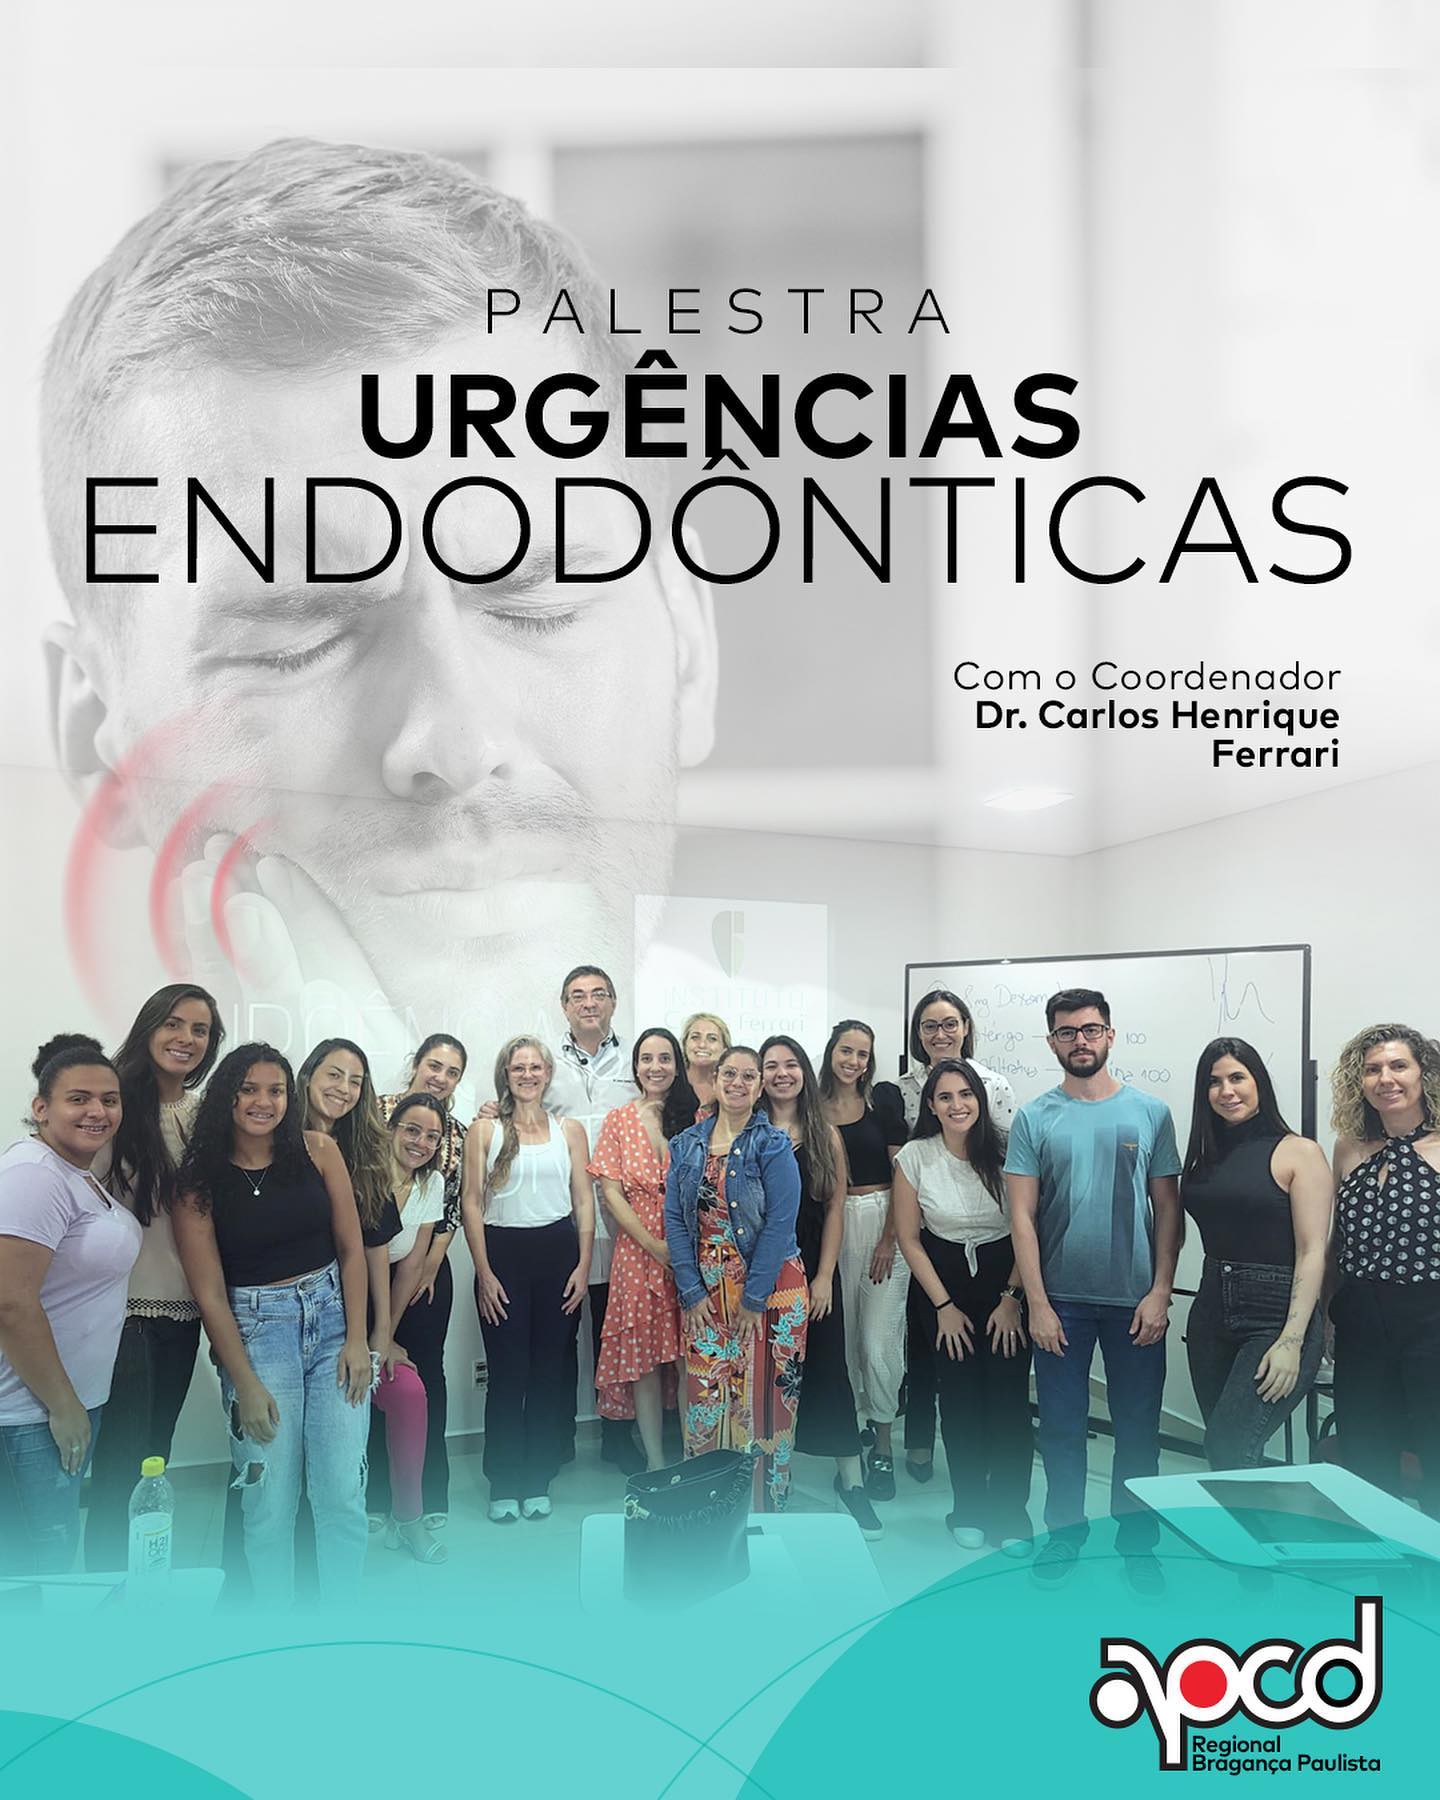 Está viendo Urgencias en Endodoncia. Conferencia en APCD Bragança Pta.